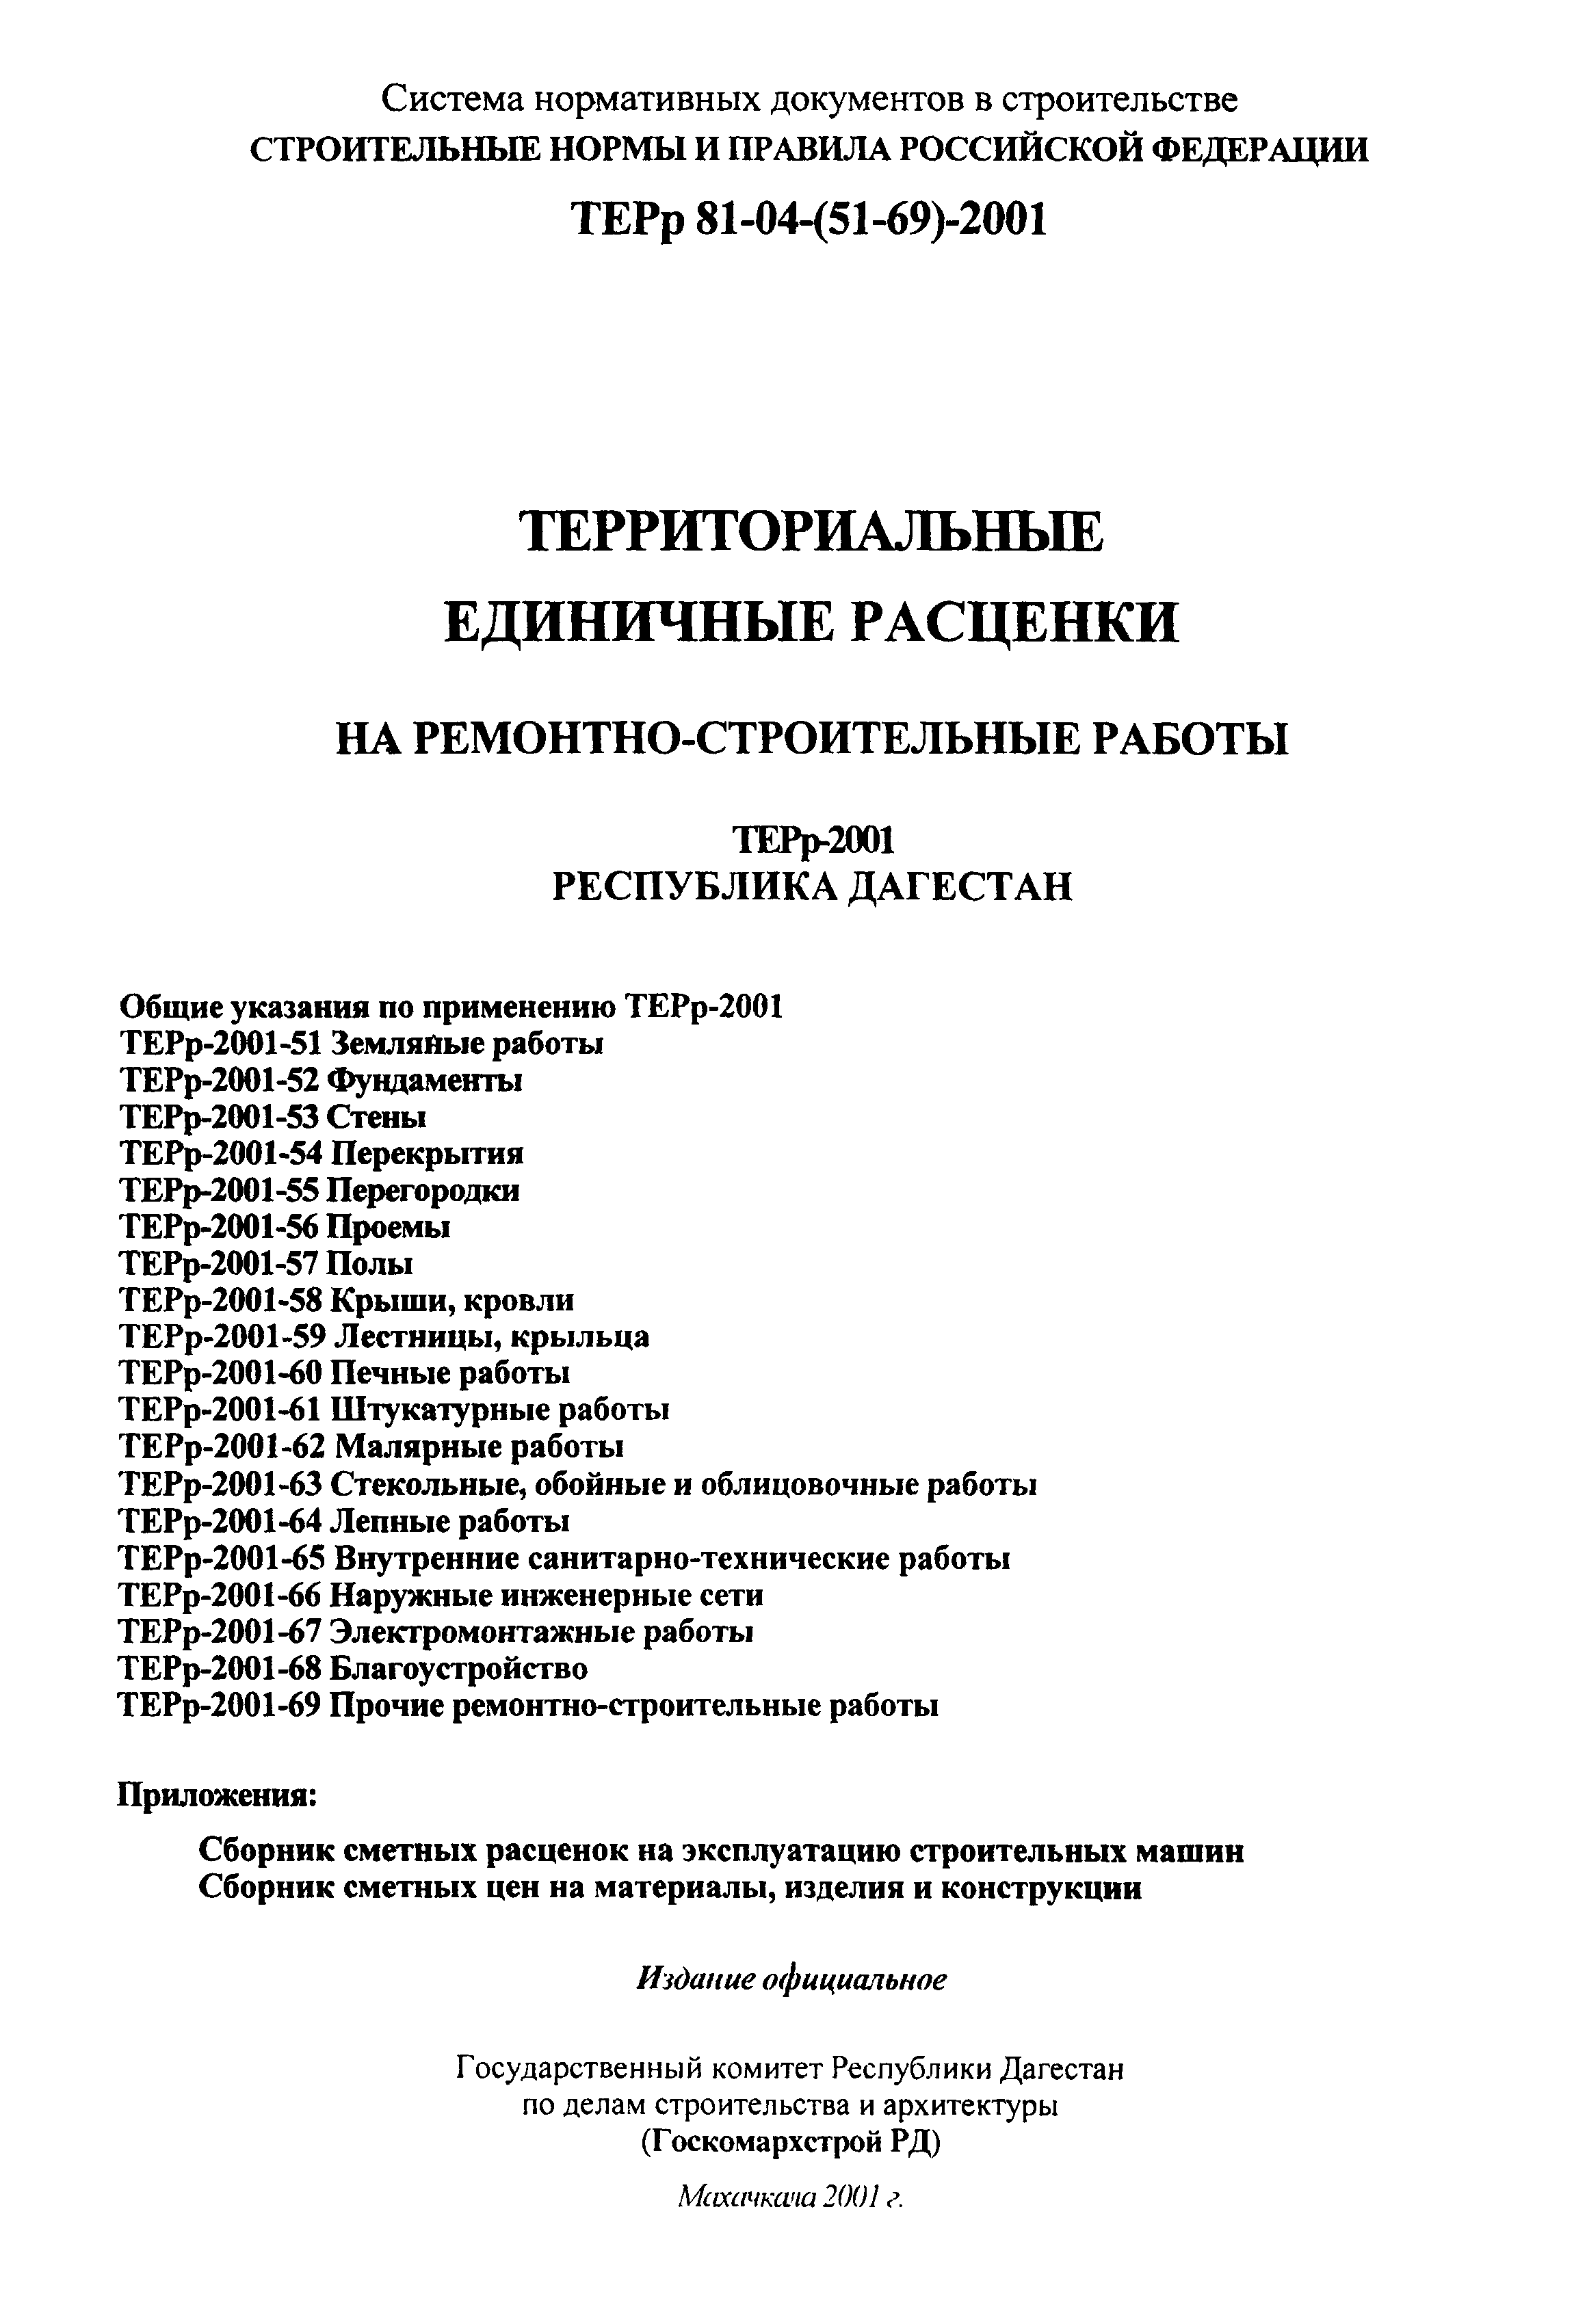 ТЕРр Республика Дагестан 2001-69